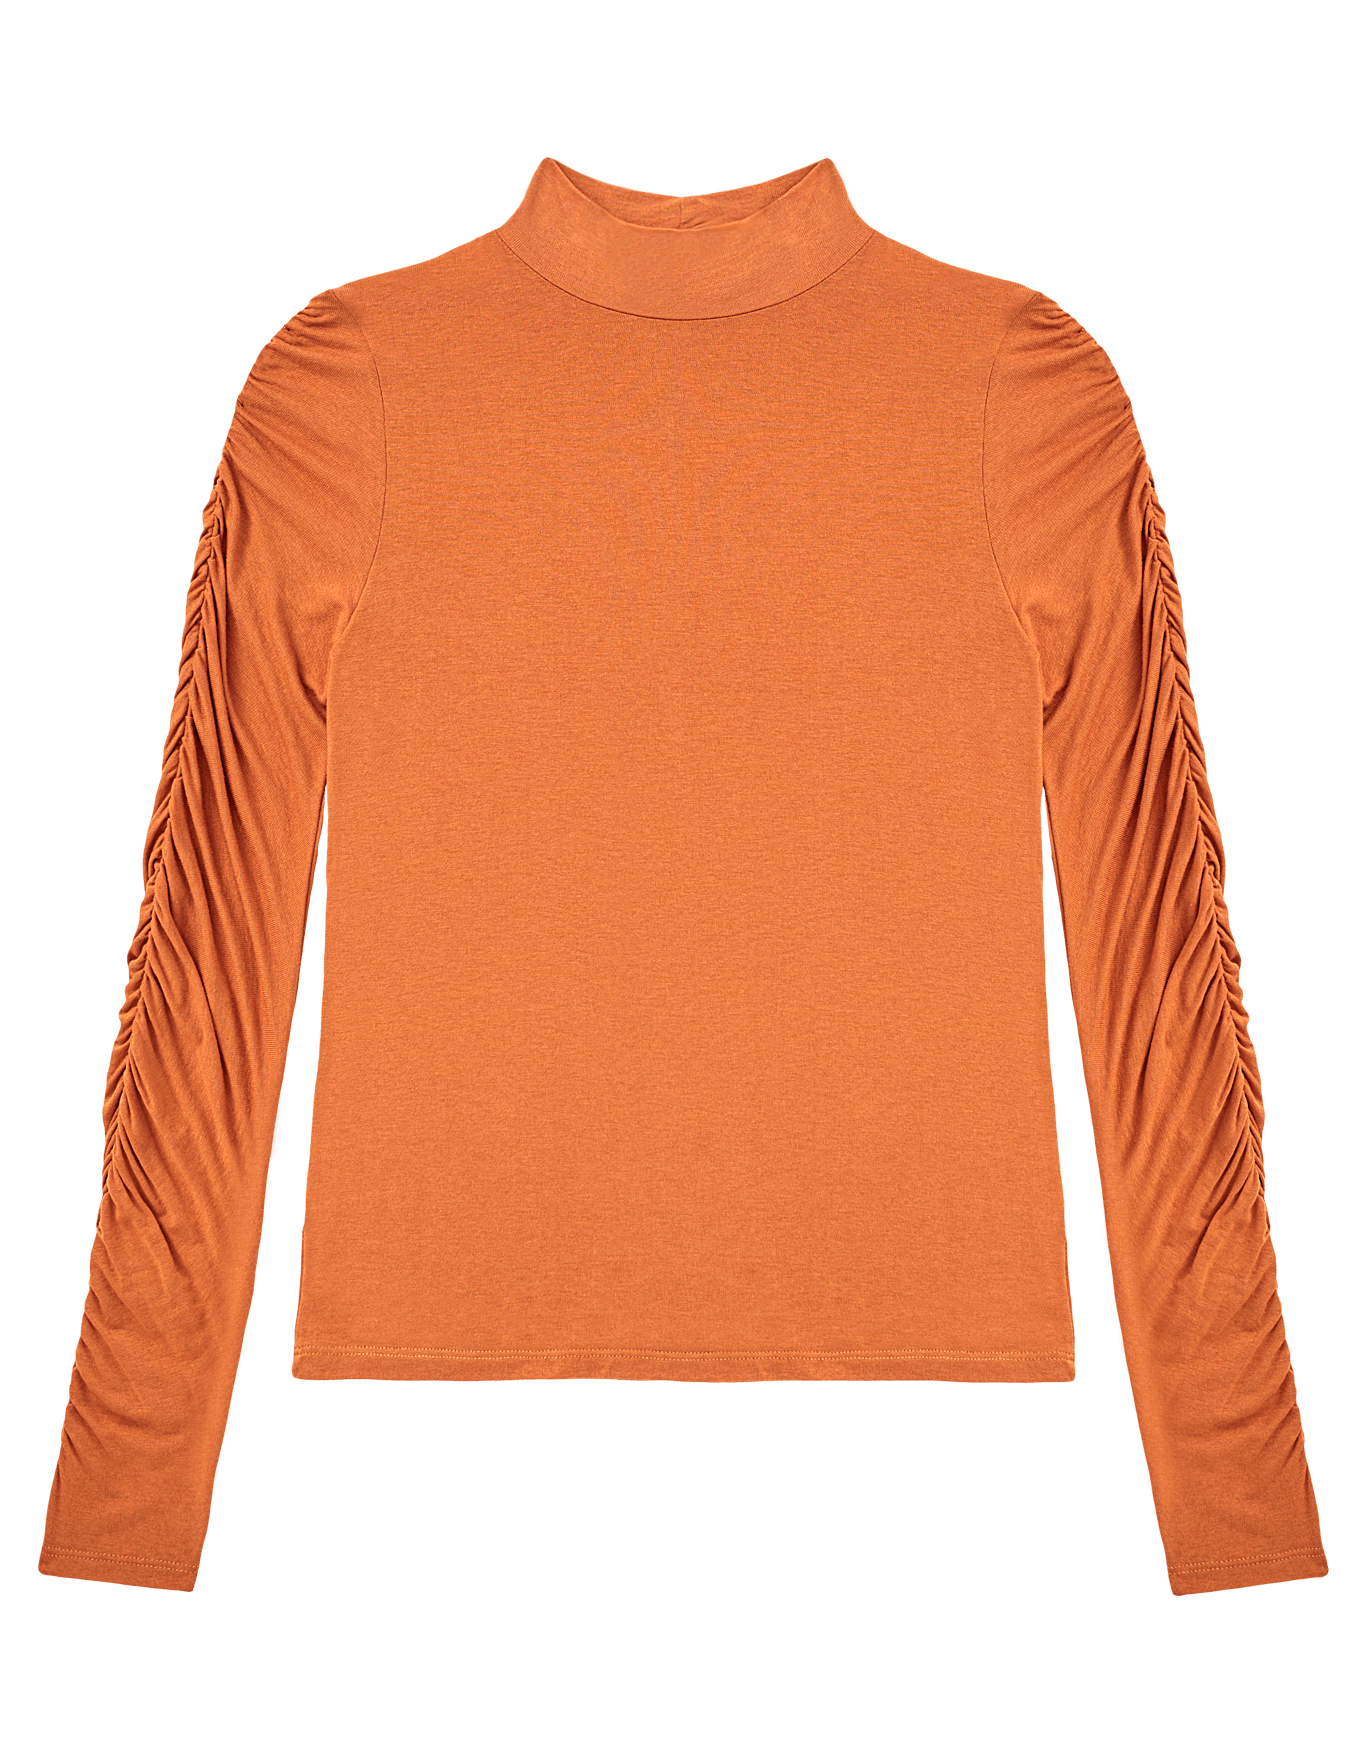 Colorvie Camisa blusa meia manga com detalhe cruzado/franzido